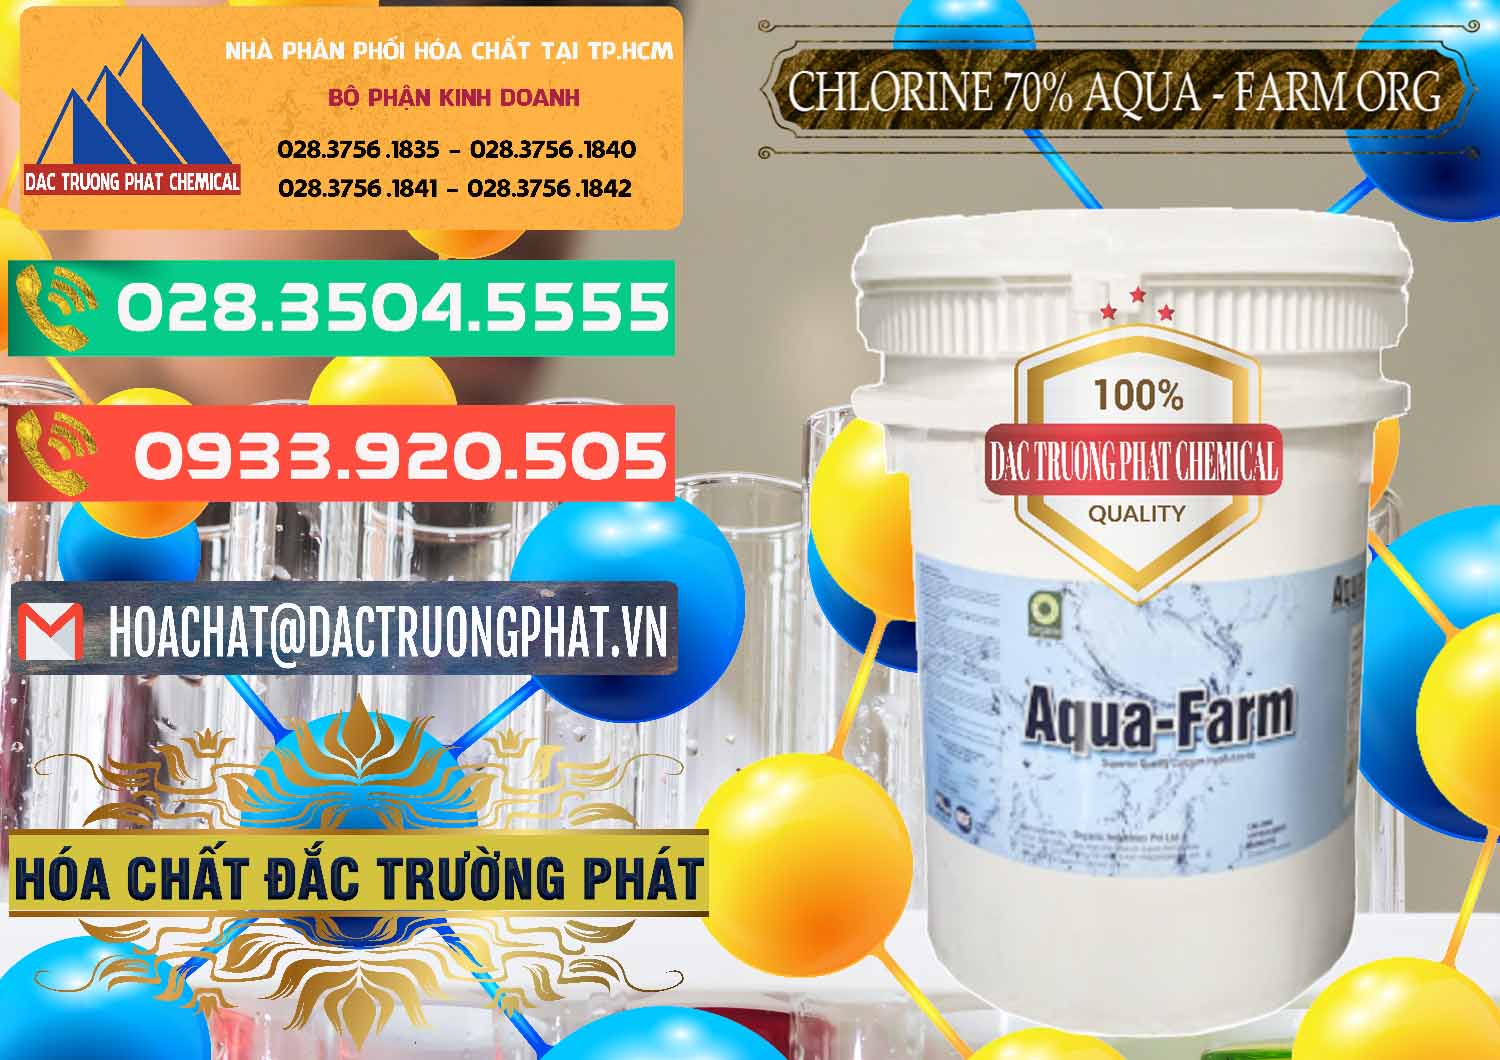 Cty bán & phân phối Chlorine – Clorin 70% Aqua - Farm ORG Organic Ấn Độ India - 0246 - Cty bán ( phân phối ) hóa chất tại TP.HCM - congtyhoachat.com.vn